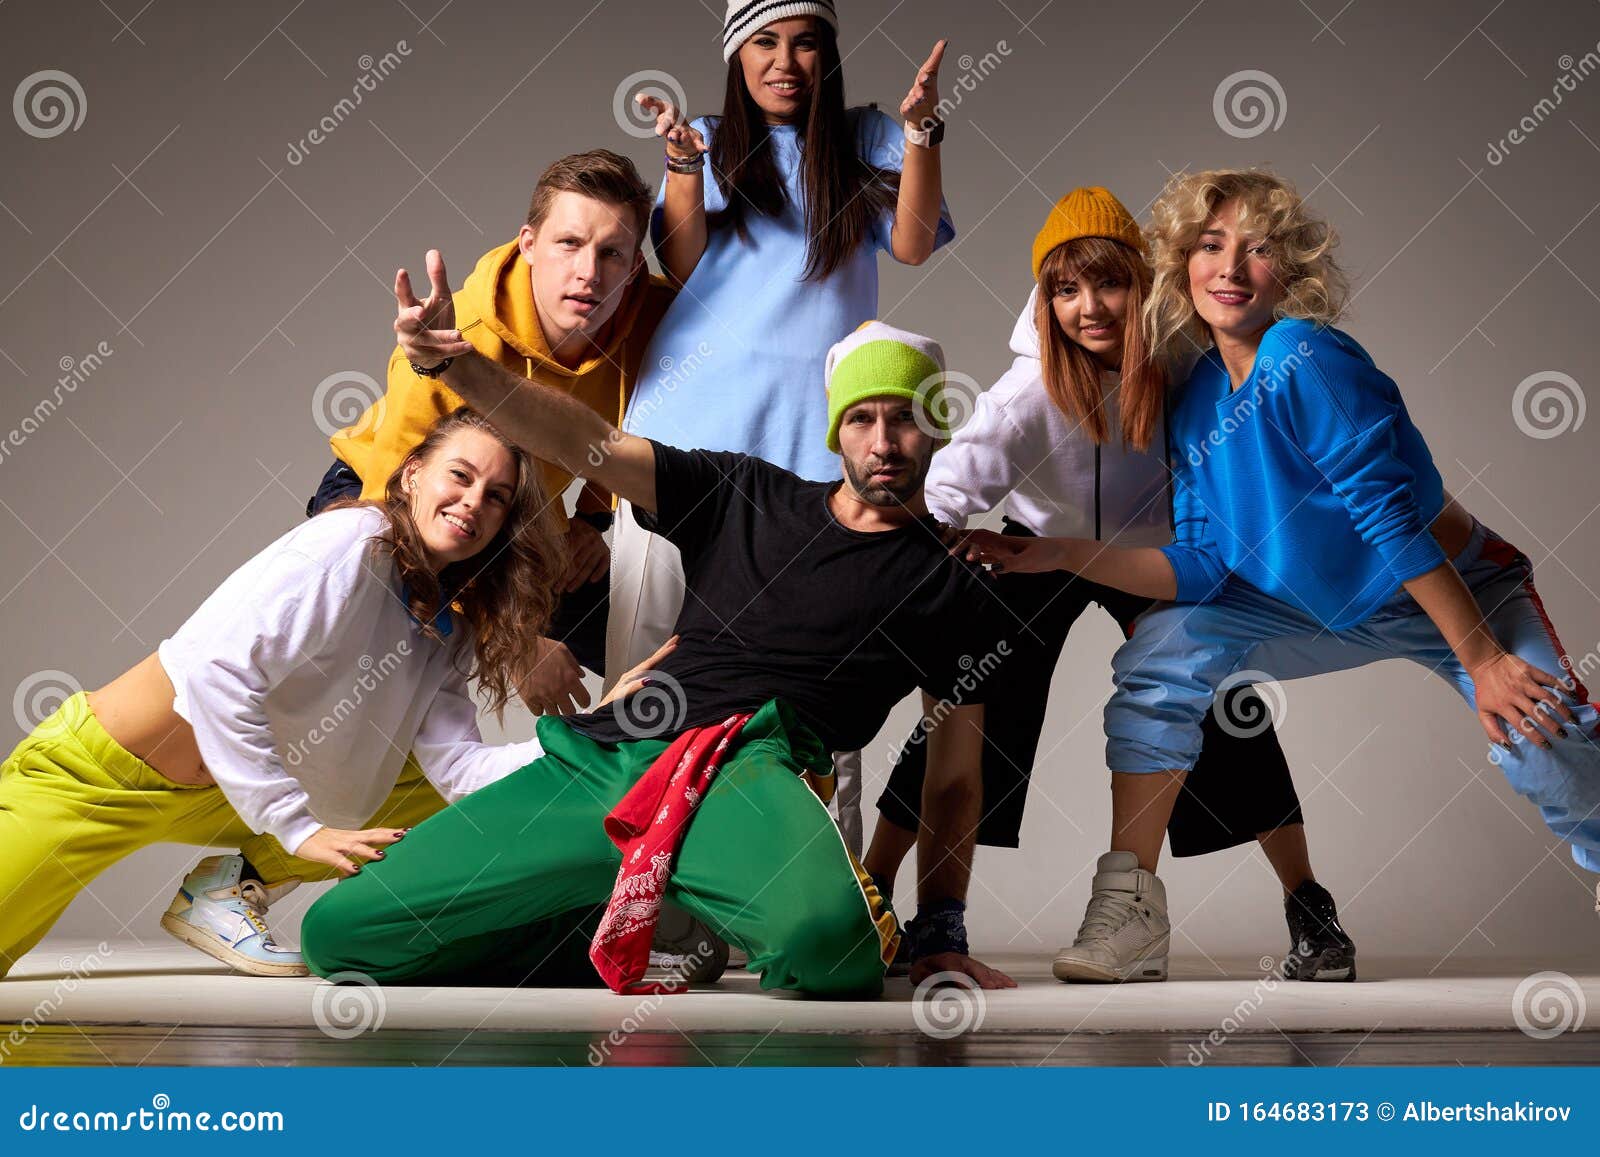 Image result for hip hop dance group | Hip hop, Dance pictures, Best dance